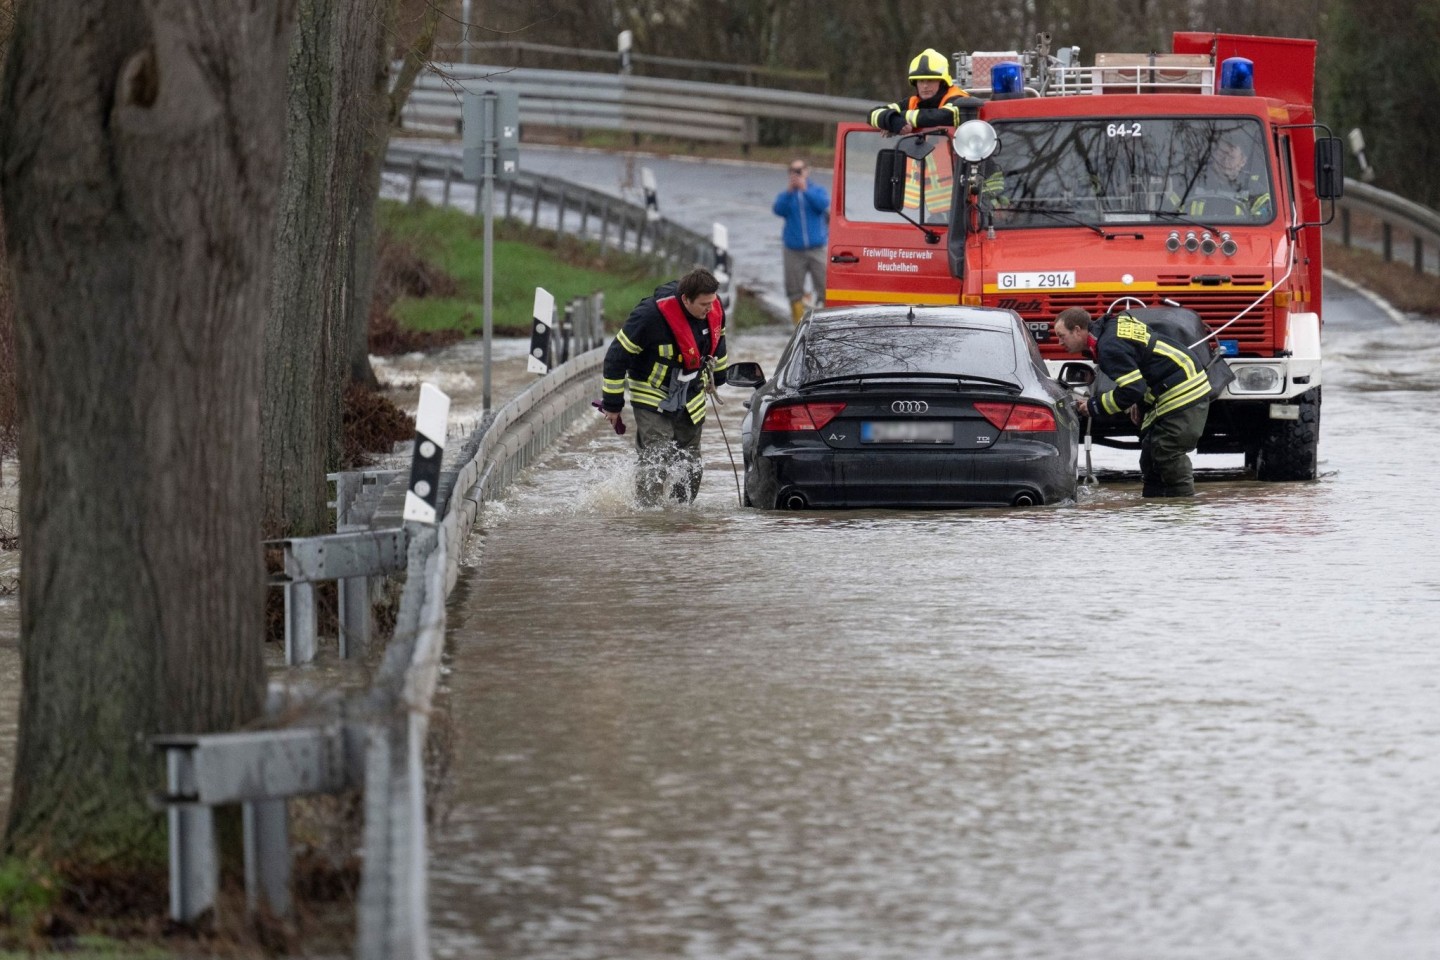 Feuerwehrleute der Freiwilligen Feuerwehr Heuchelheim ziehen einen Audi aus dem Wasser.